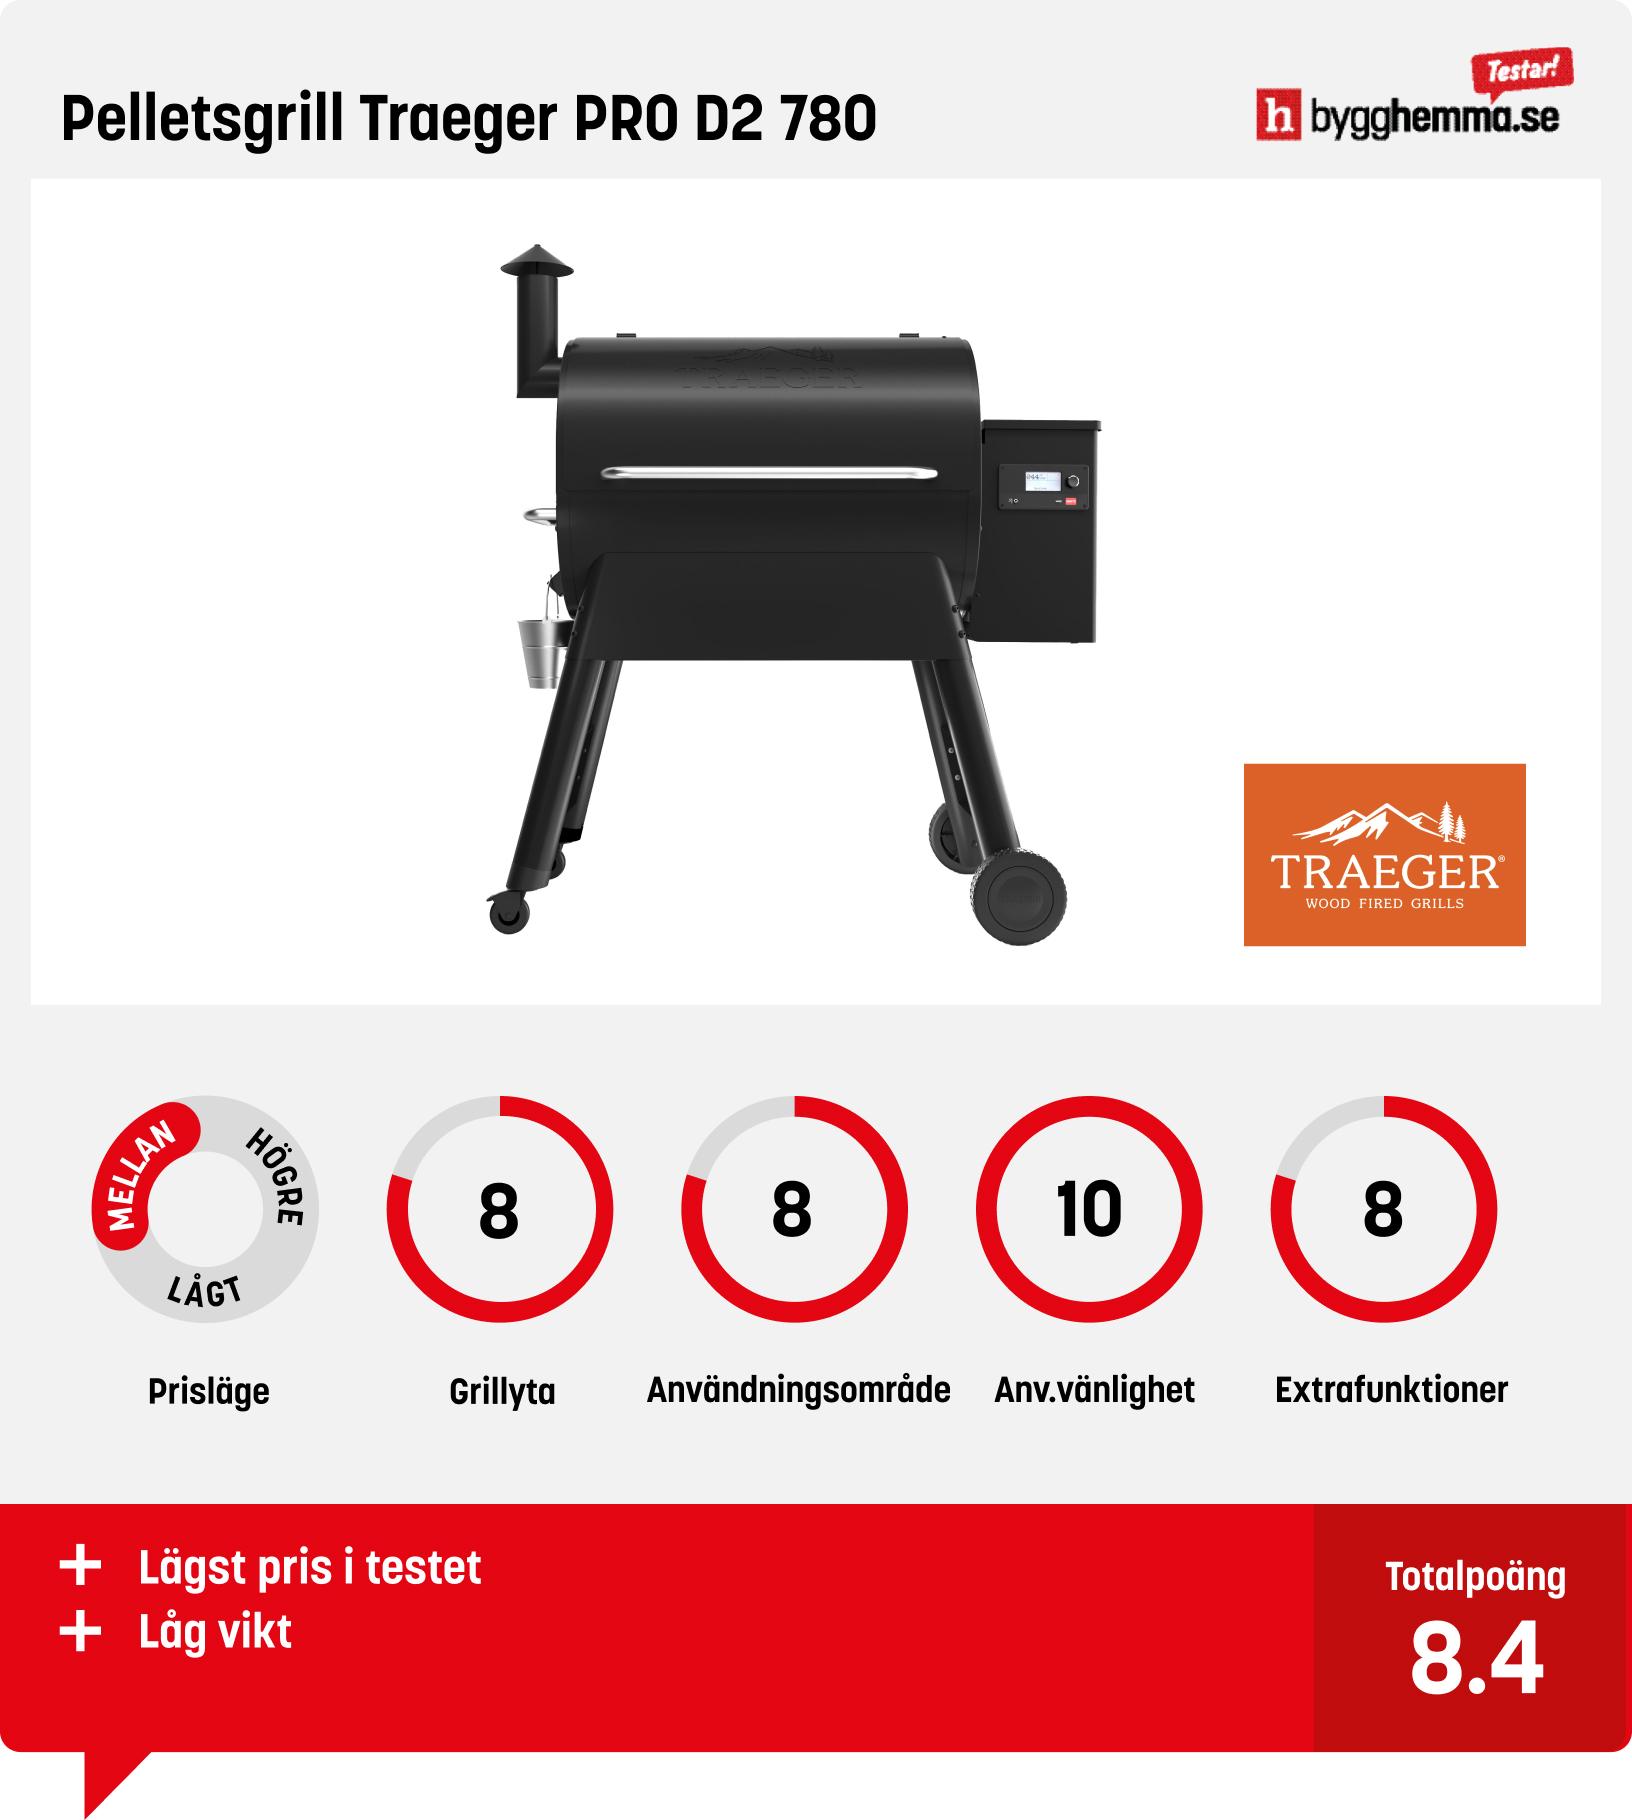 Pelletsgrill test - Pelletsgrill Traeger PRO D2 780